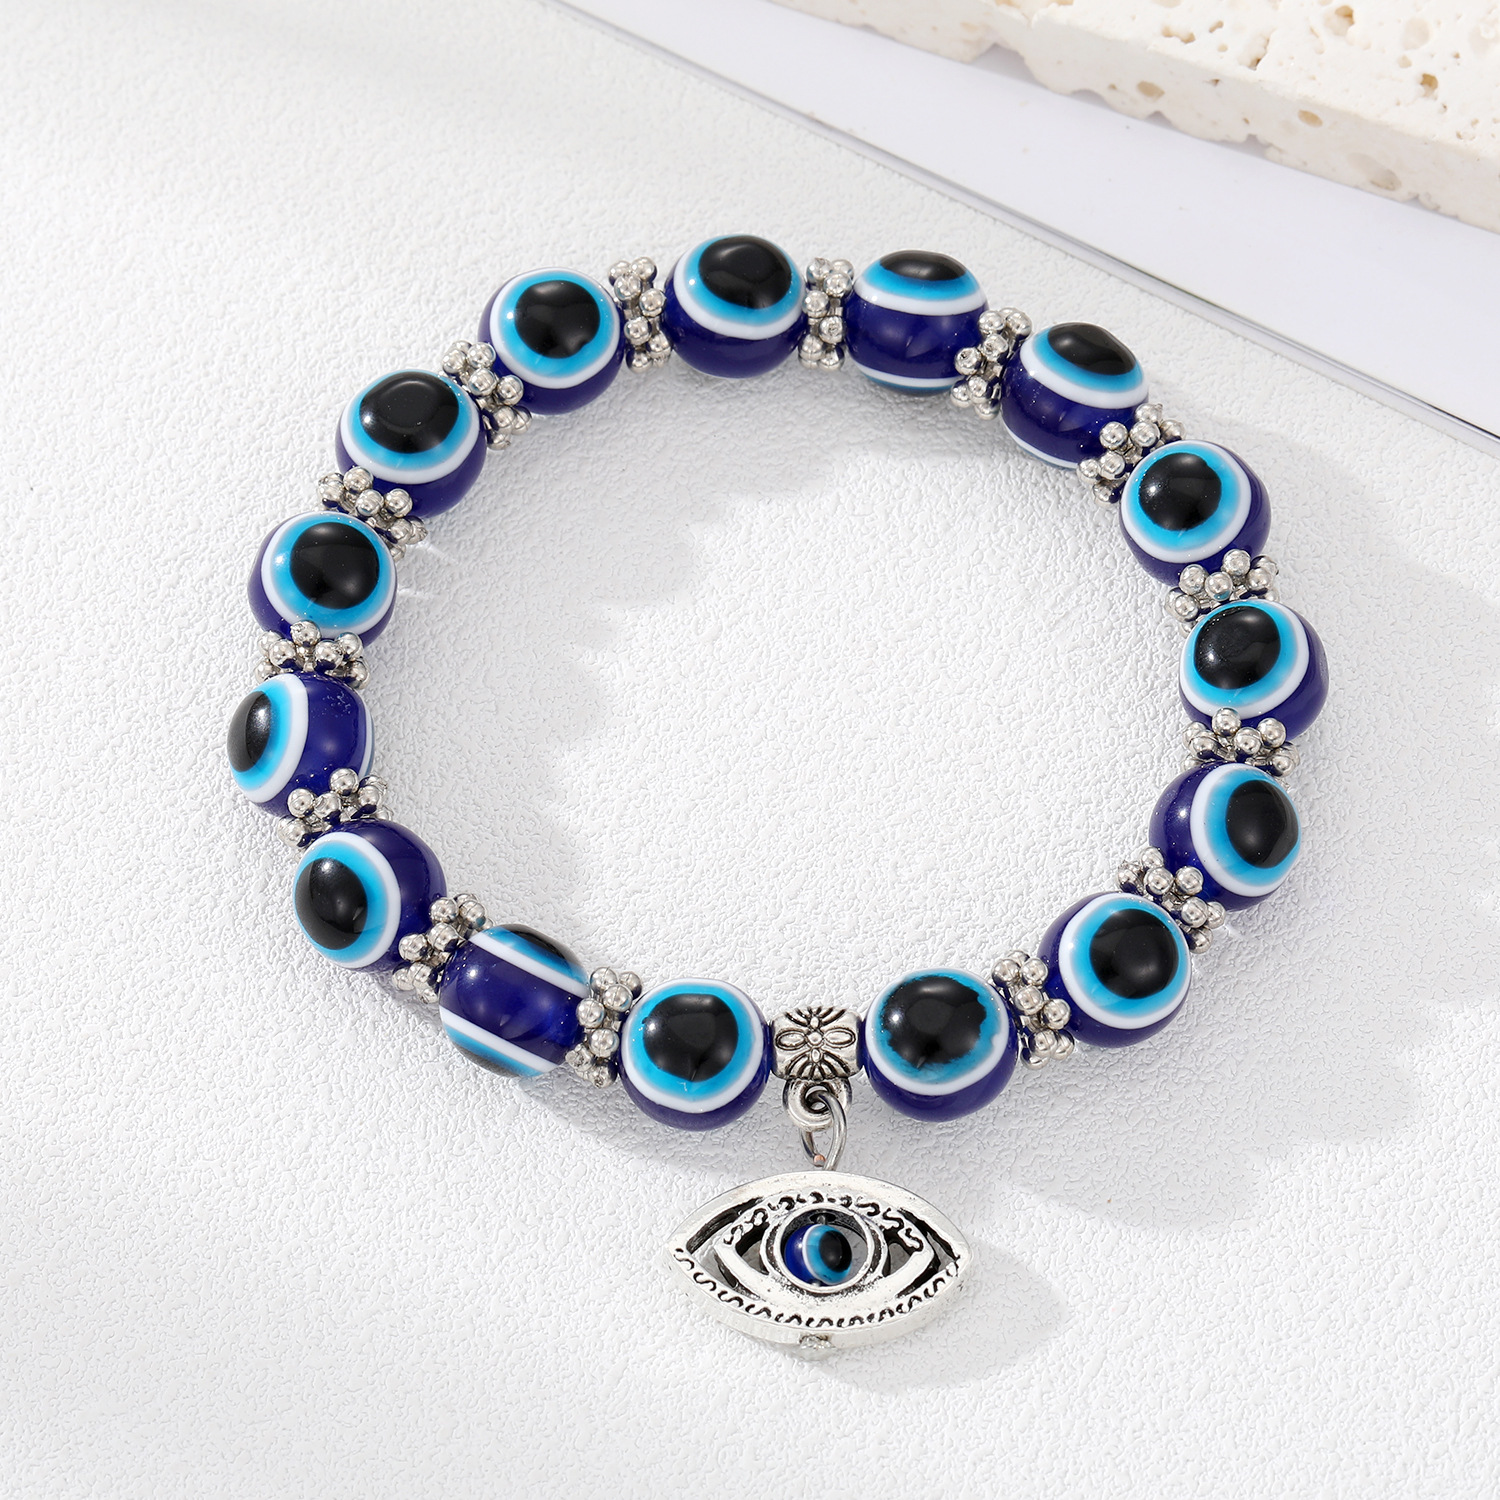 Blue eye bracelet with large beads